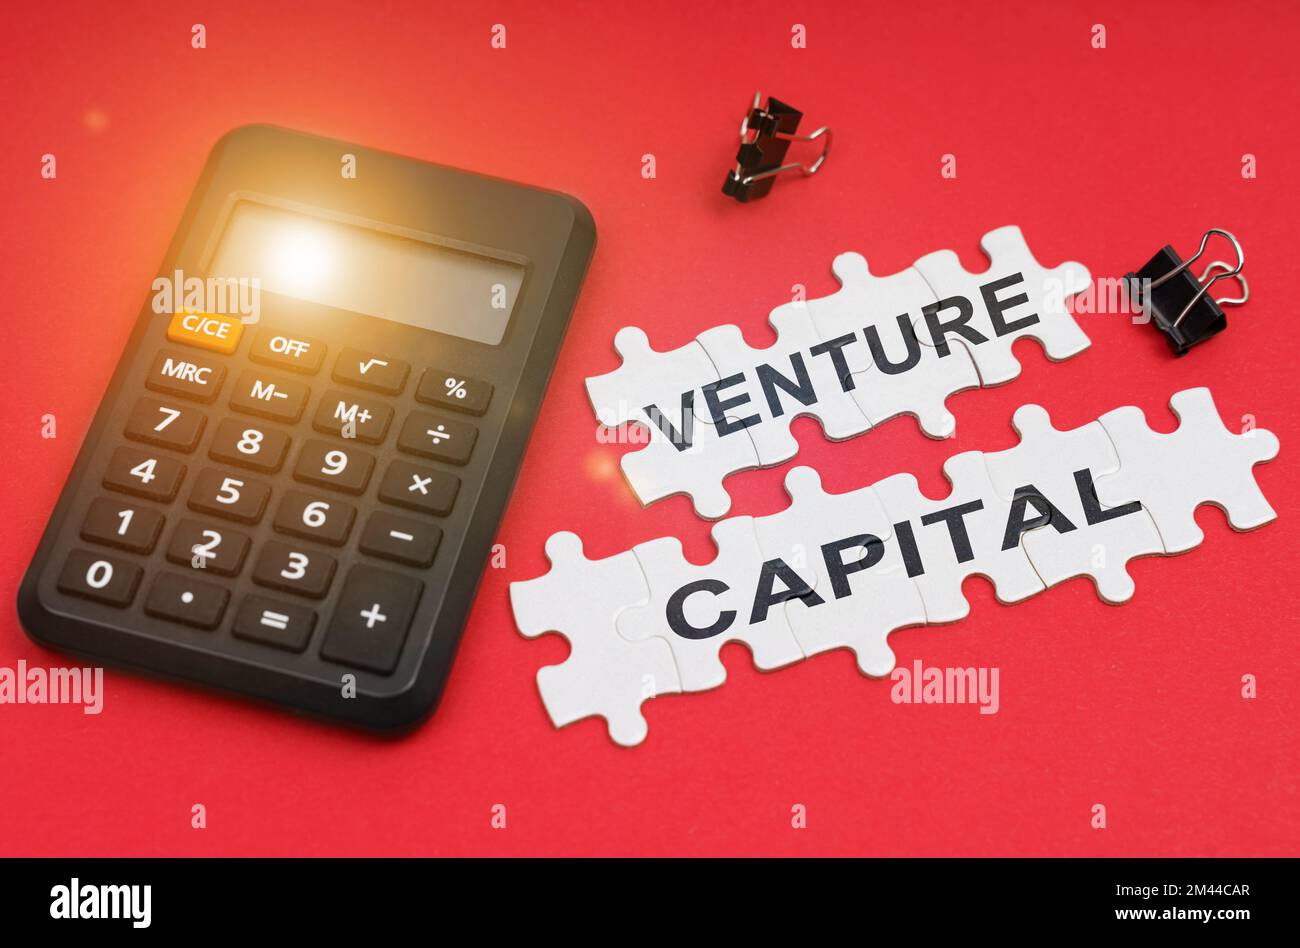 Concepto de finanzas y economía. En la superficie roja hay una calculadora, abrazaderas y rompecabezas con la inscripción - Venture capital Foto de stock